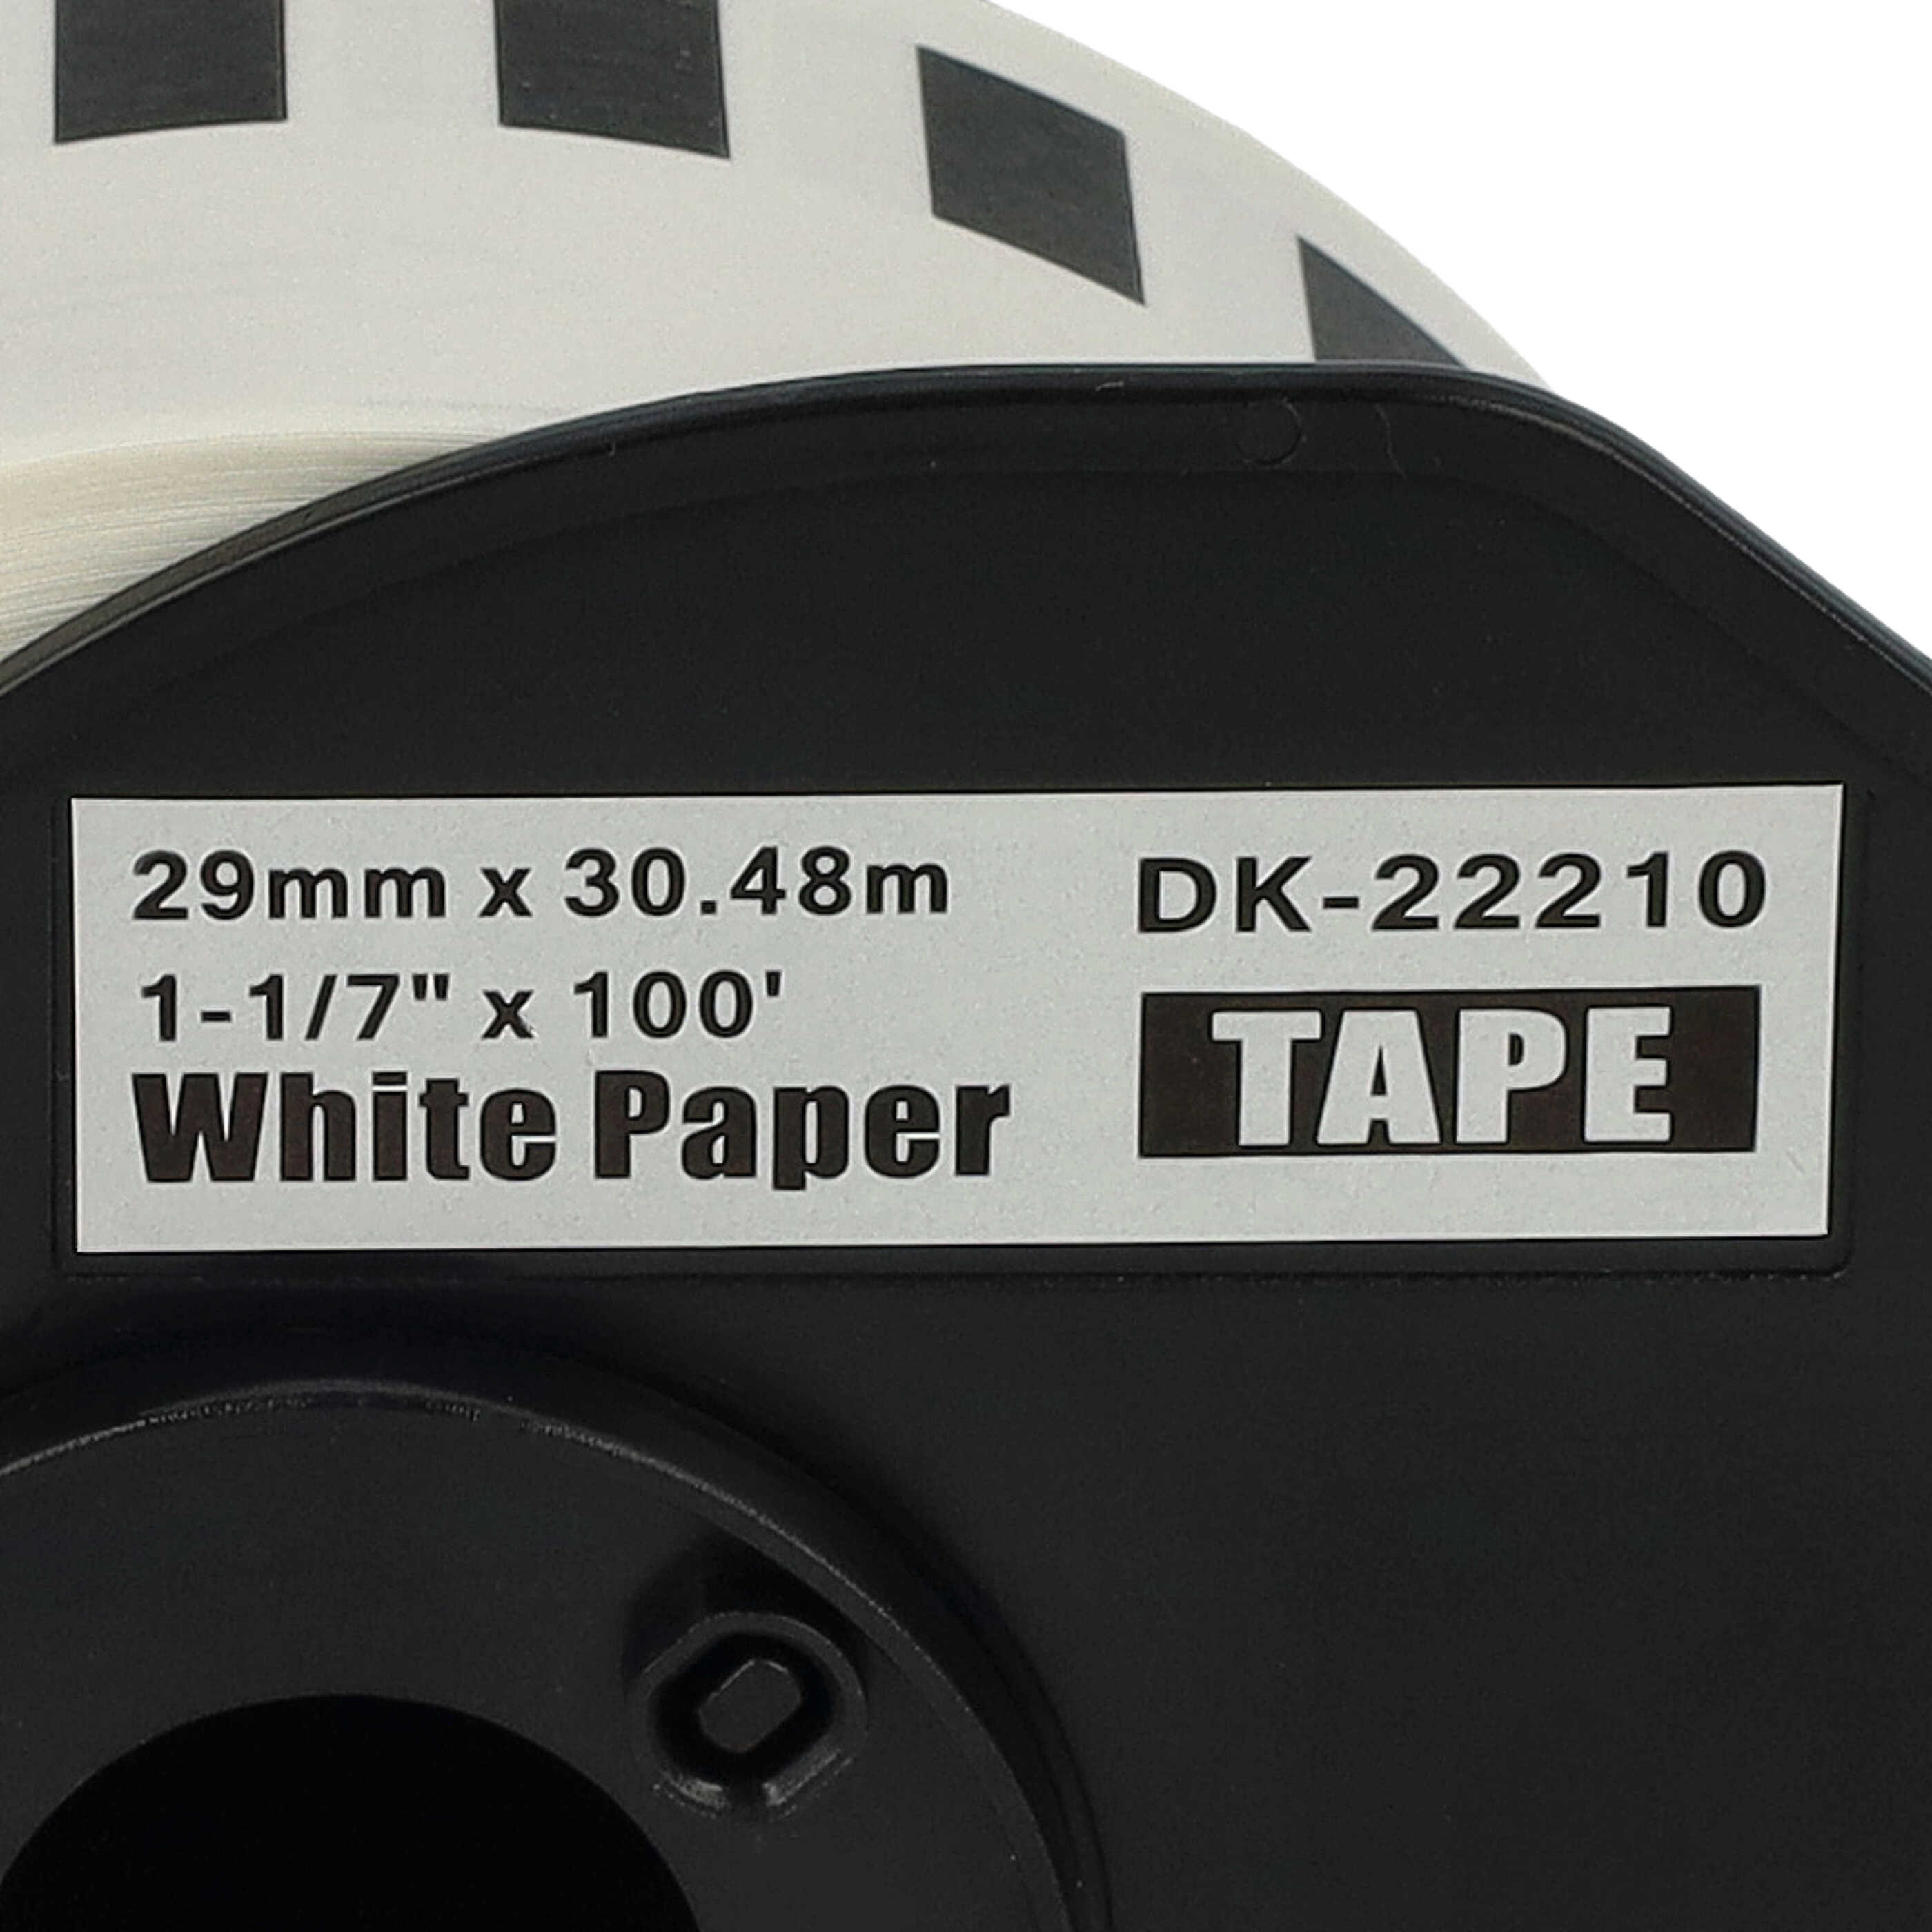 Rotolo etichette sostituisce Brother DK-22210 per etichettatrice - 29mm x 30,48m + supporto